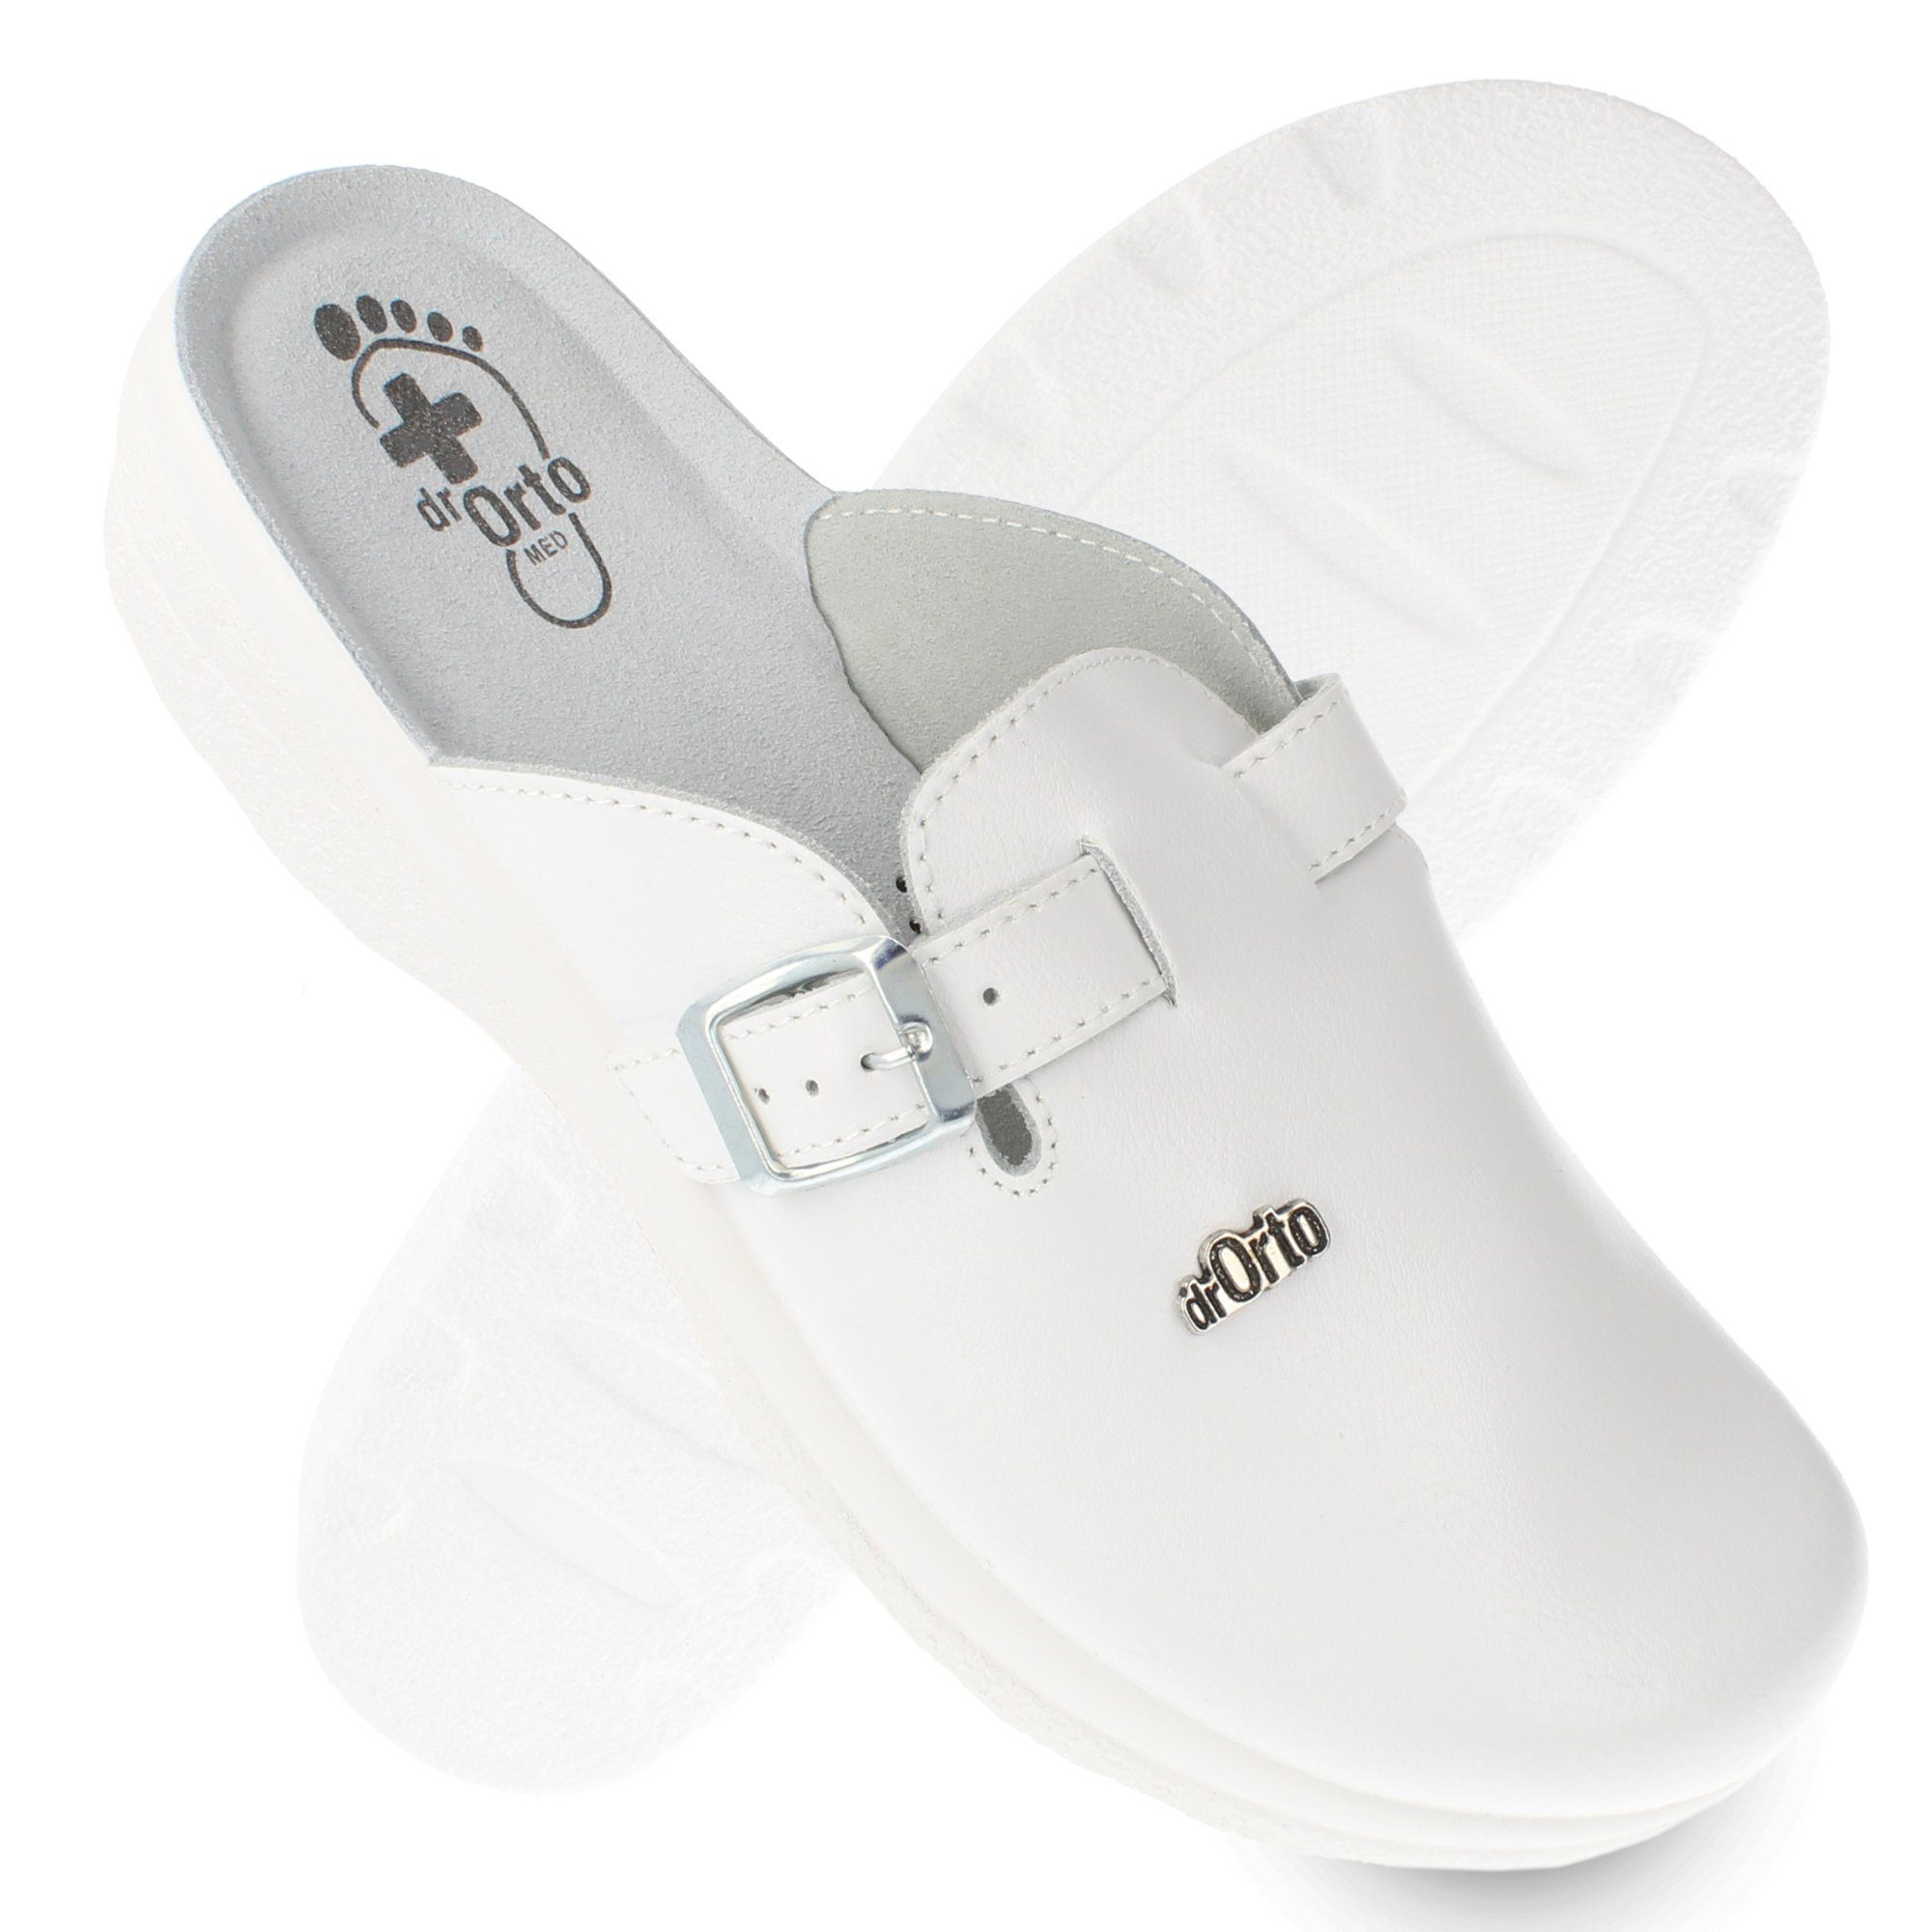 Verkäufe und Einkäufe Dr. Orto Praxis-Schuhe (Arzt-Clogs) Clog Gesundheitsschuhe, Präventivschuhe